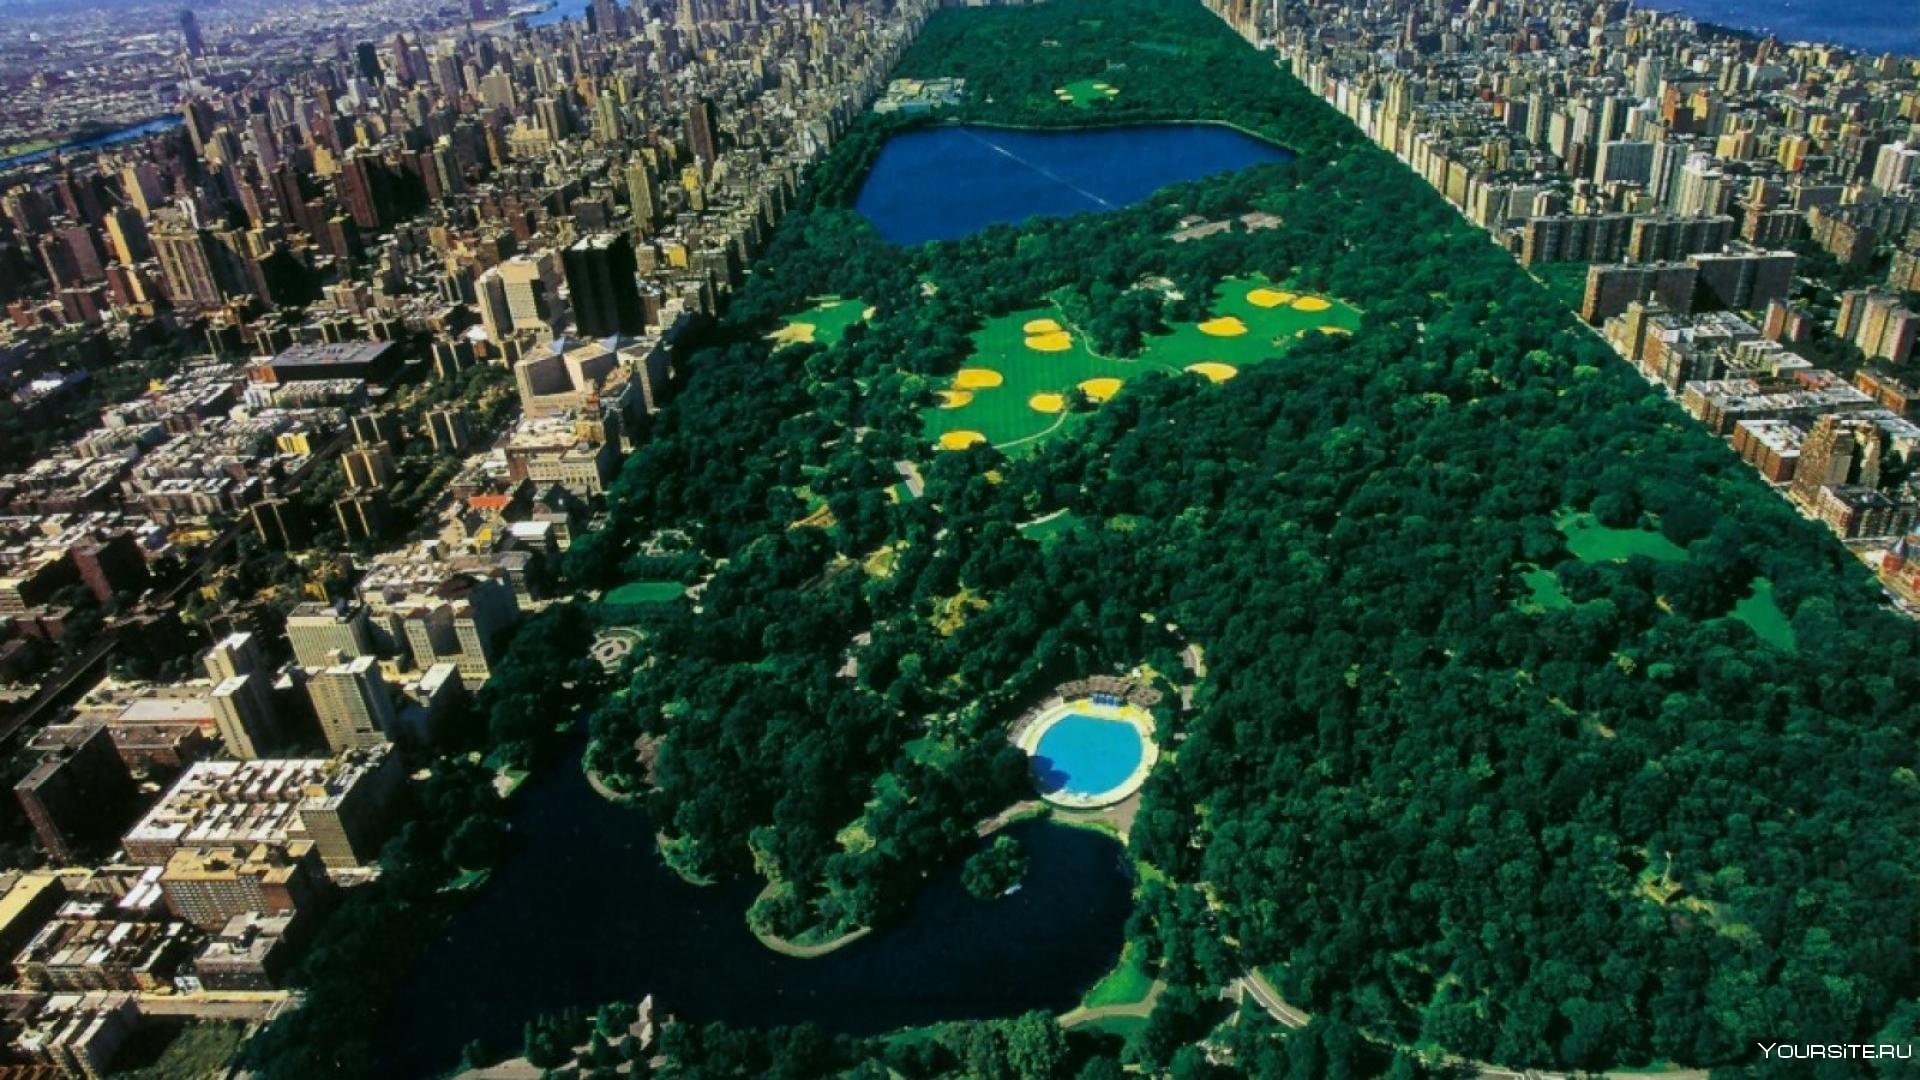 Парки в америке в городе. Центральный парк Нью-Йорк. Боро парк Нью-Йорк. Централ парк Нью-Йорк площадь. Нью-Йорк Манхэттен Центральный парк.